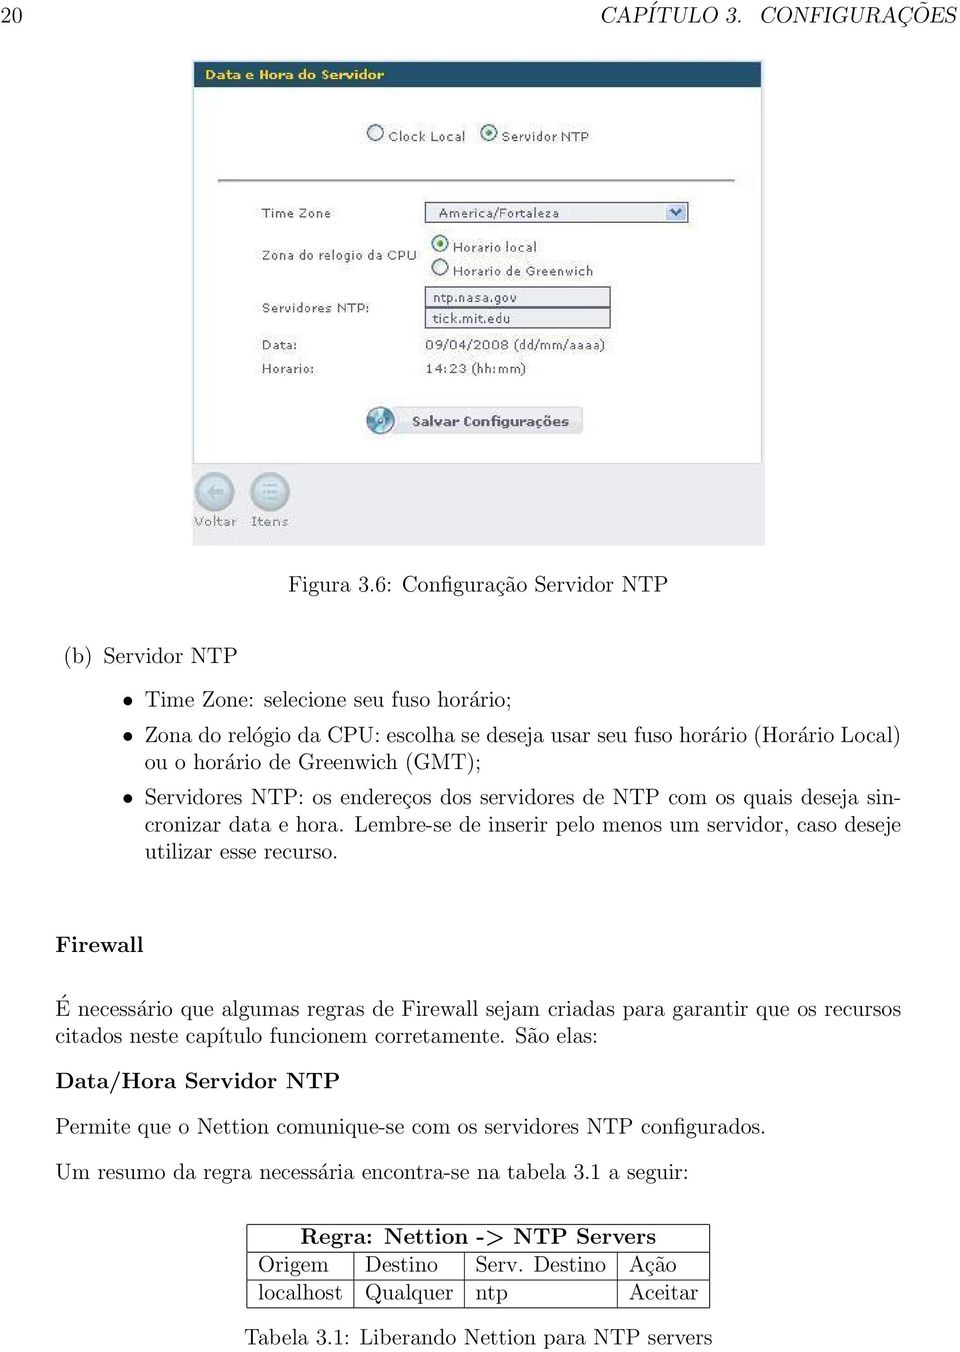 Servidores NTP: os endereços dos servidores de NTP com os quais deseja sincronizar data e hora. Lembre-se de inserir pelo menos um servidor, caso deseje utilizar esse recurso.